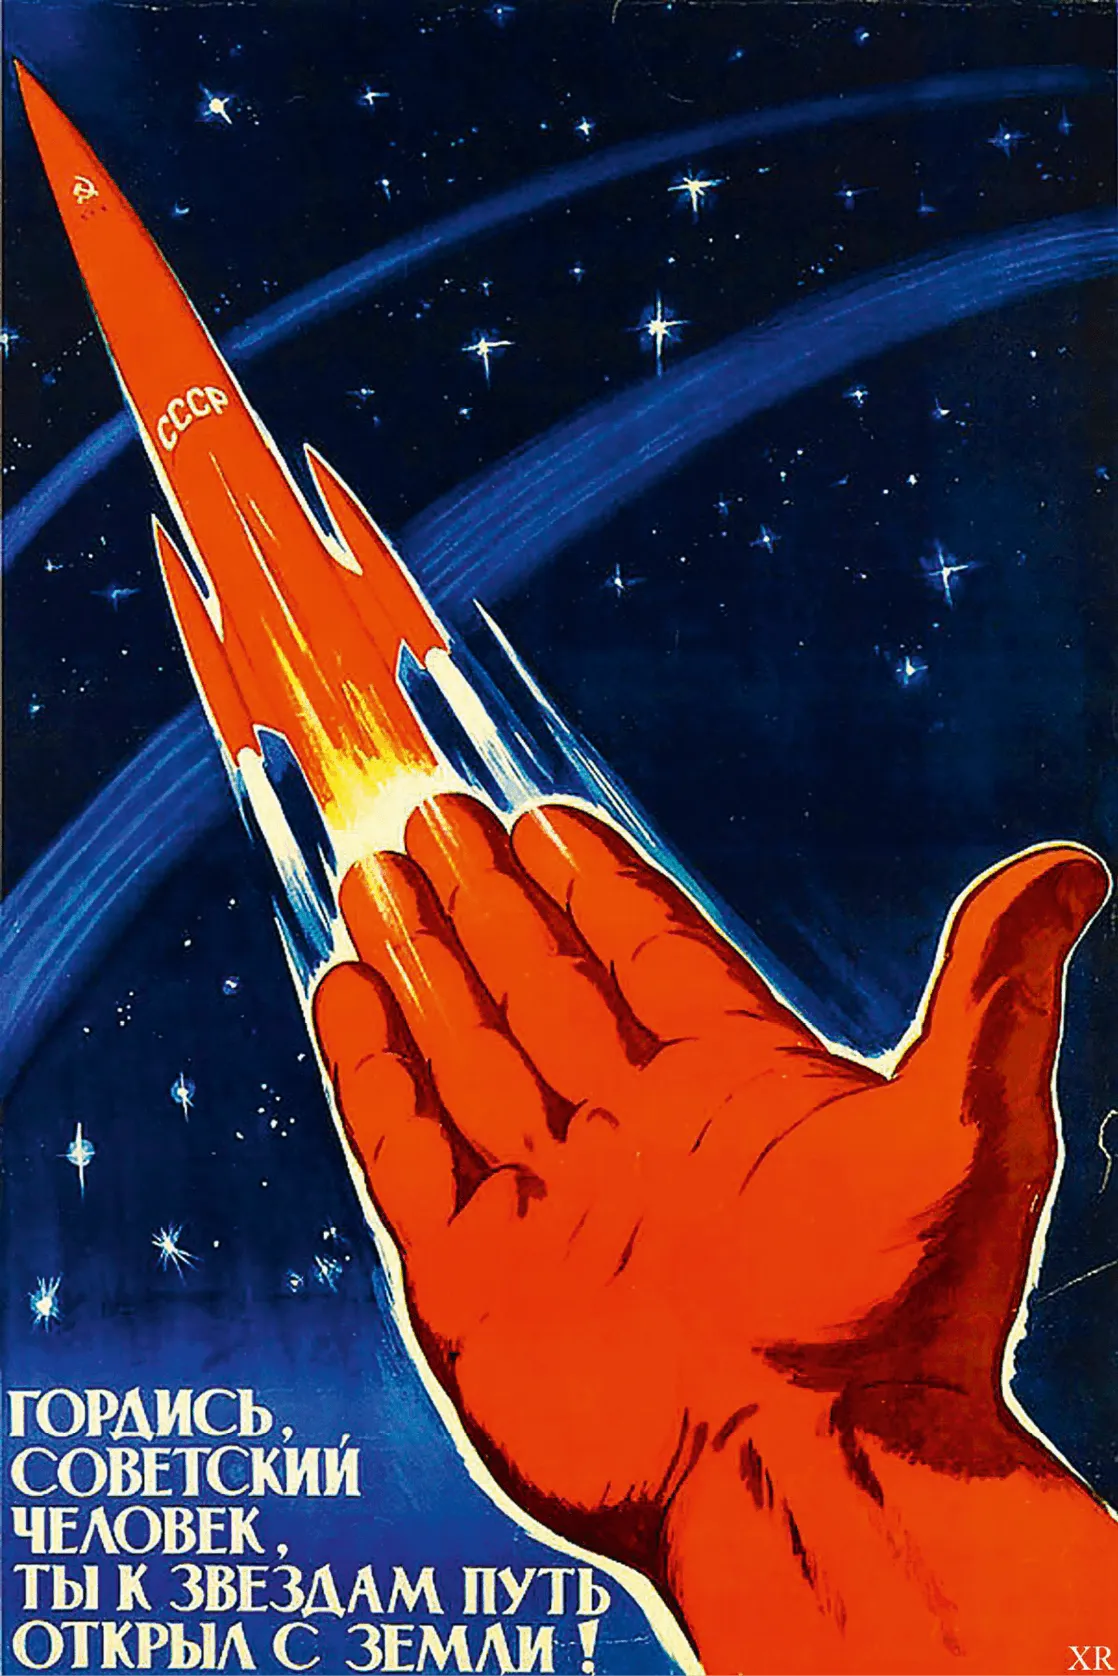 Affiche propagande soviétique